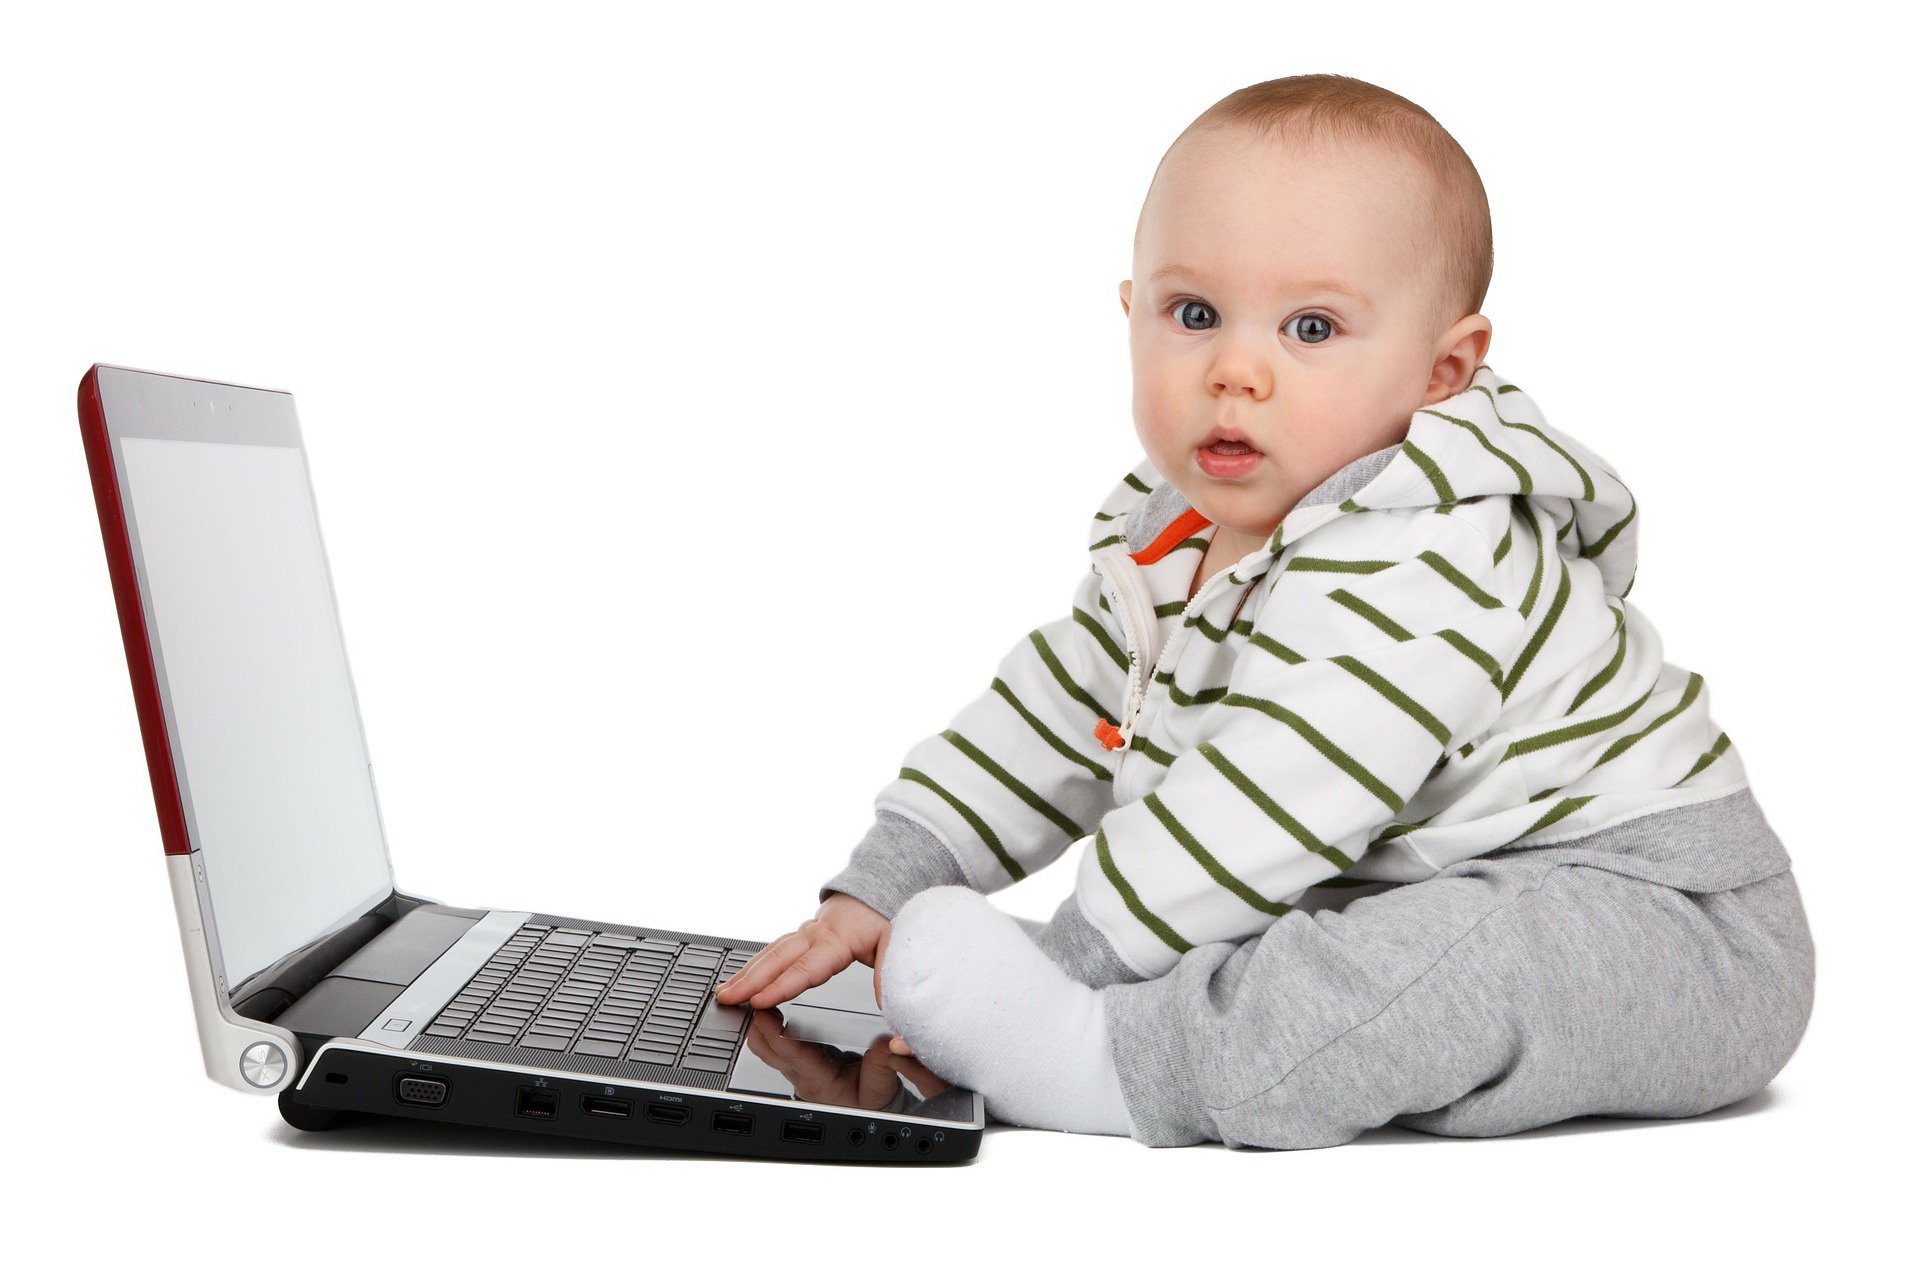 Dziecko przed komputerem